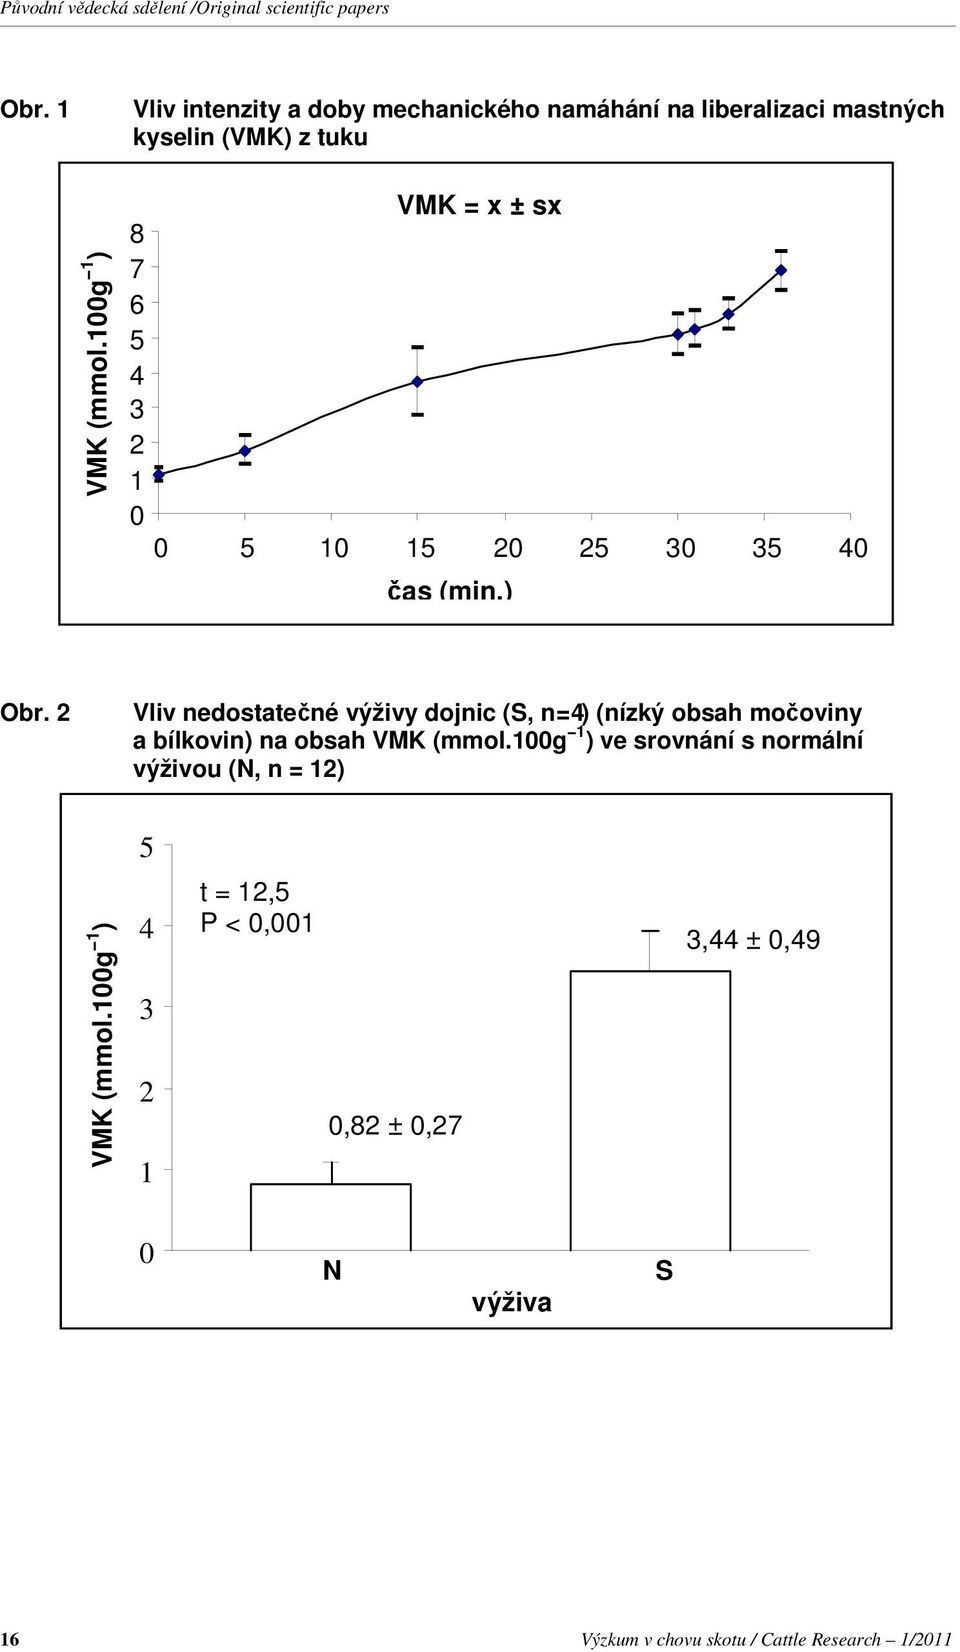 2 Vliv nedostatečné výživy dojnic (S, n = 4) (nízký obsah močoviny a bílkovin) na obsah VMK (mmol.